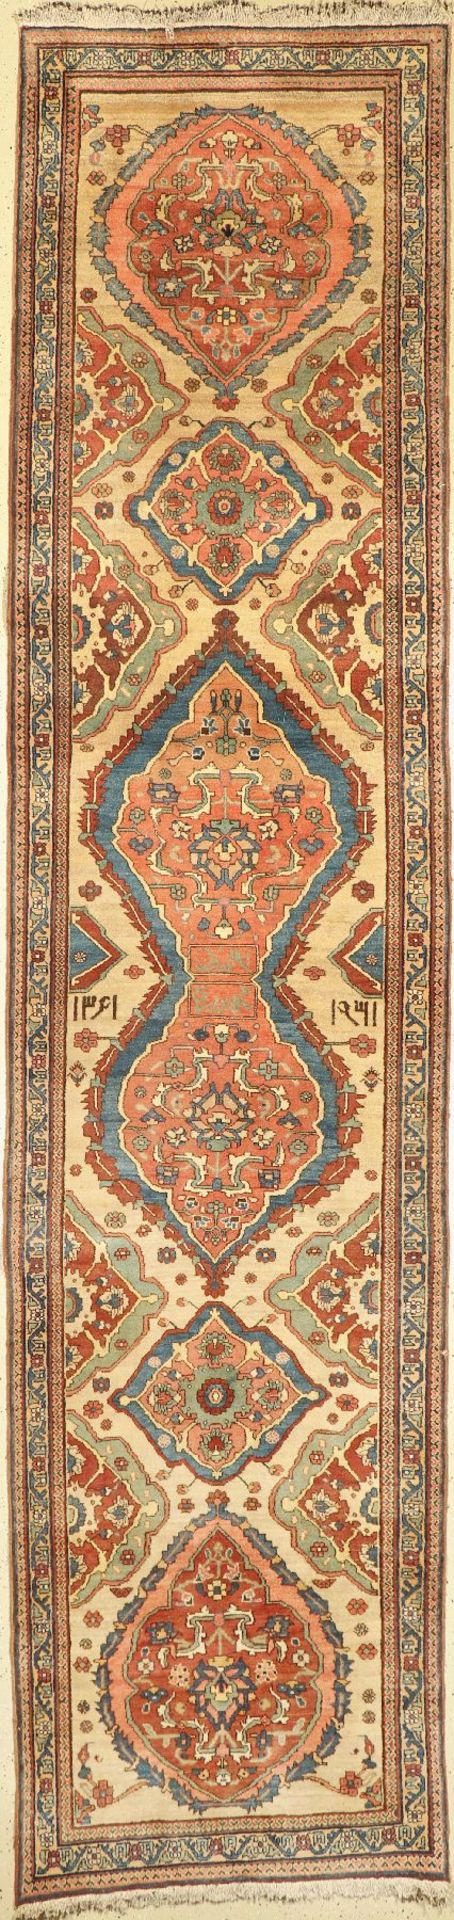 Meschgin alt,   Persien, datiert 1361(1982), Wolle auf